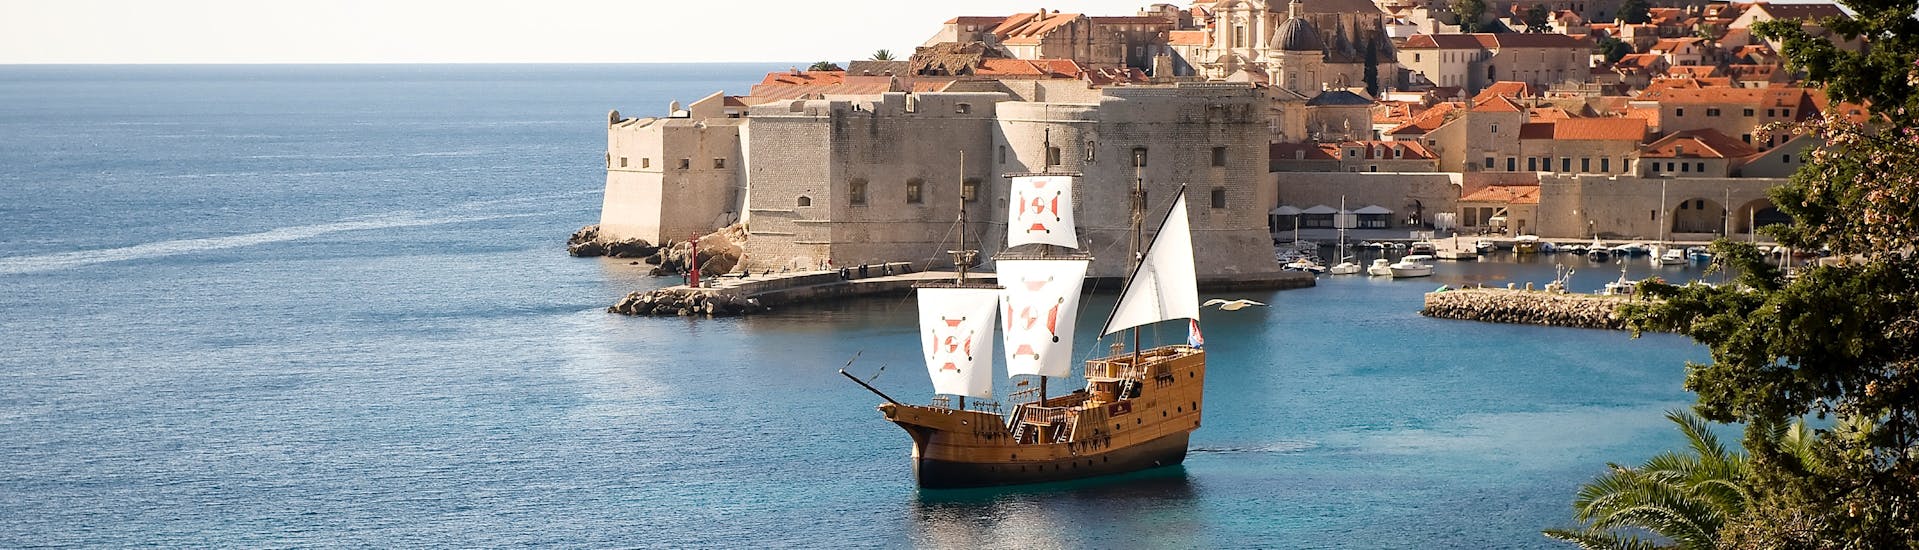 El barco tradicional Karaka en el agua antes del atardecer con Karaka Dubrovnik.